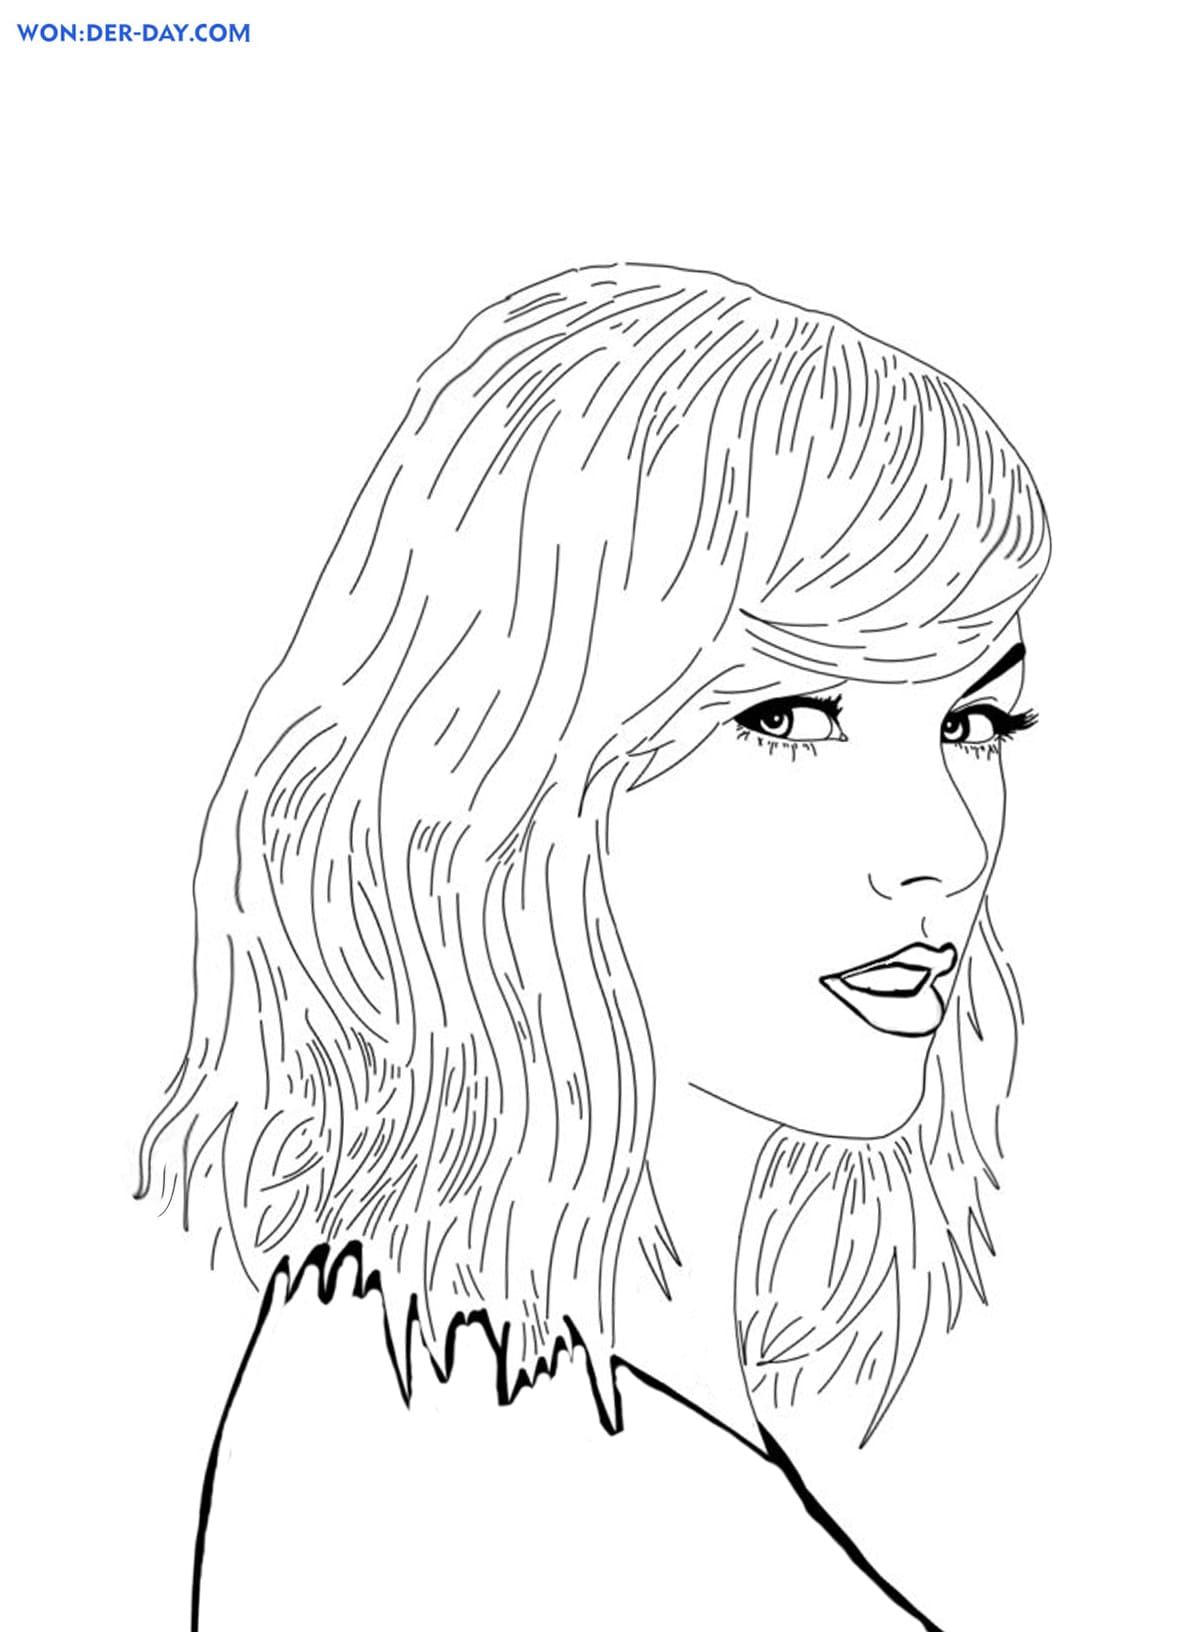 Dibujos de Taylor Swift para colorear | WONDER DAY — Dibujos para colorear  para niños y adultos